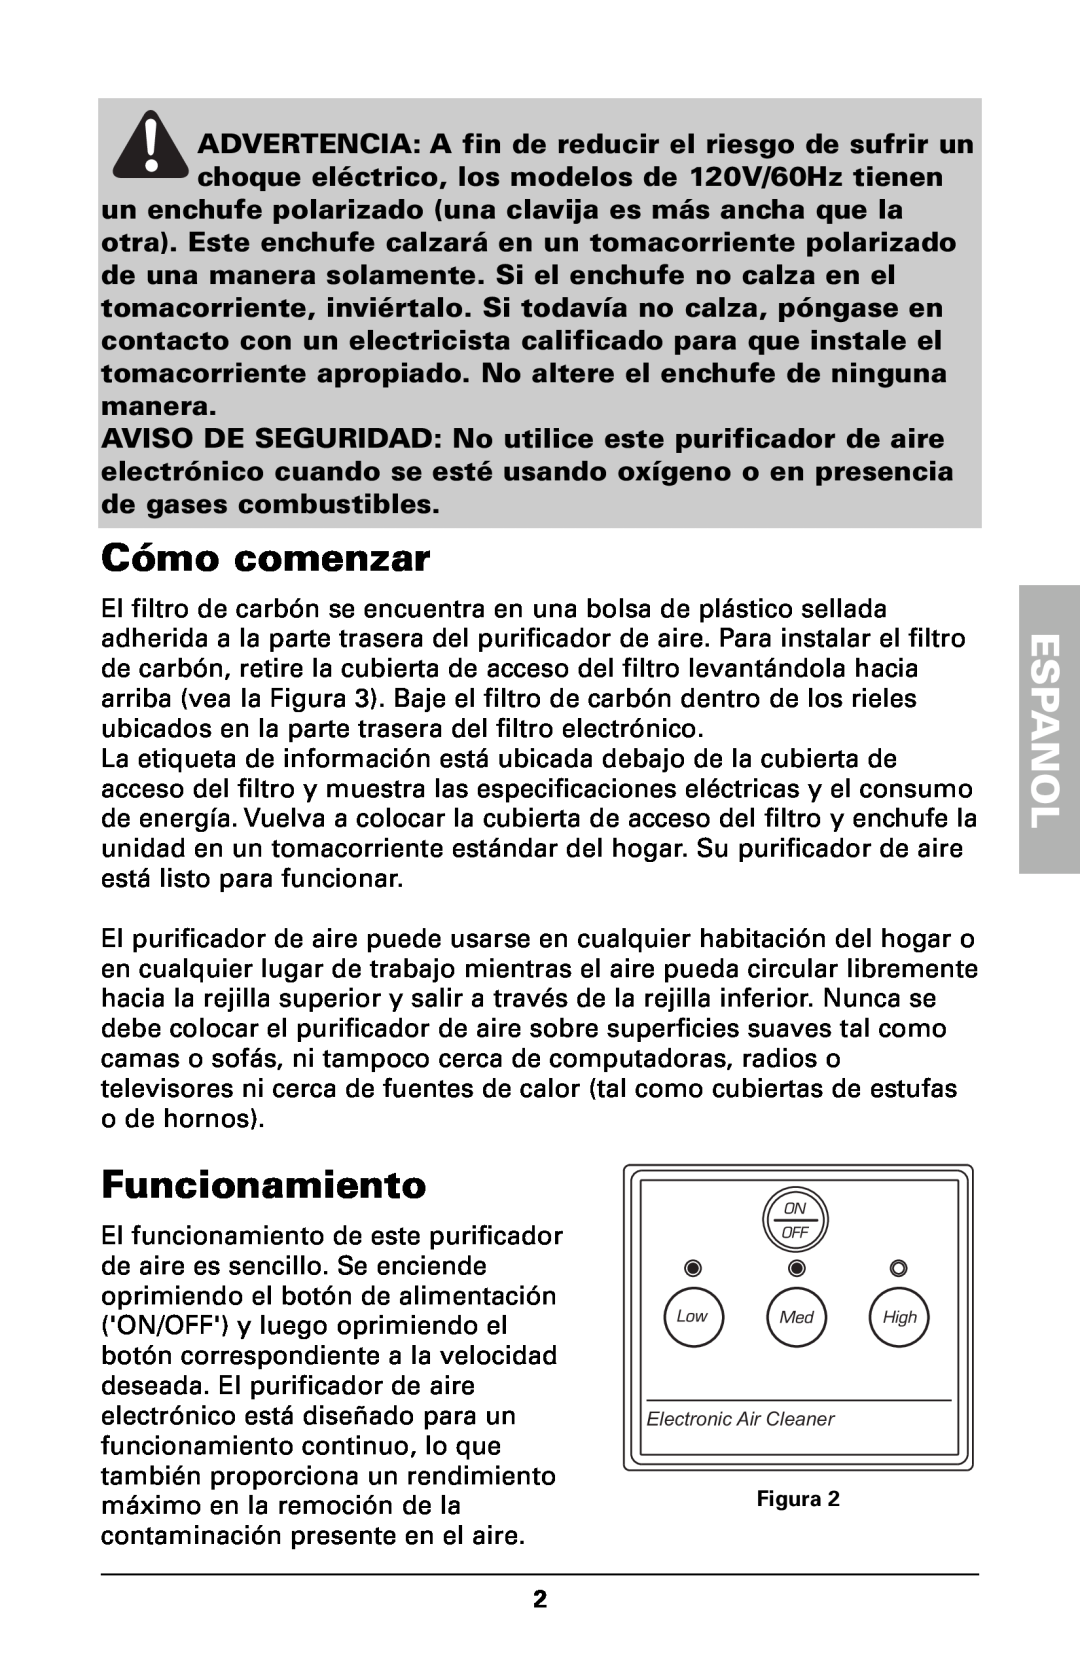 Trion High Efficiency Console Electronic Air Purifier manual Cómo comenzar, Funcionamiento, Espanol 